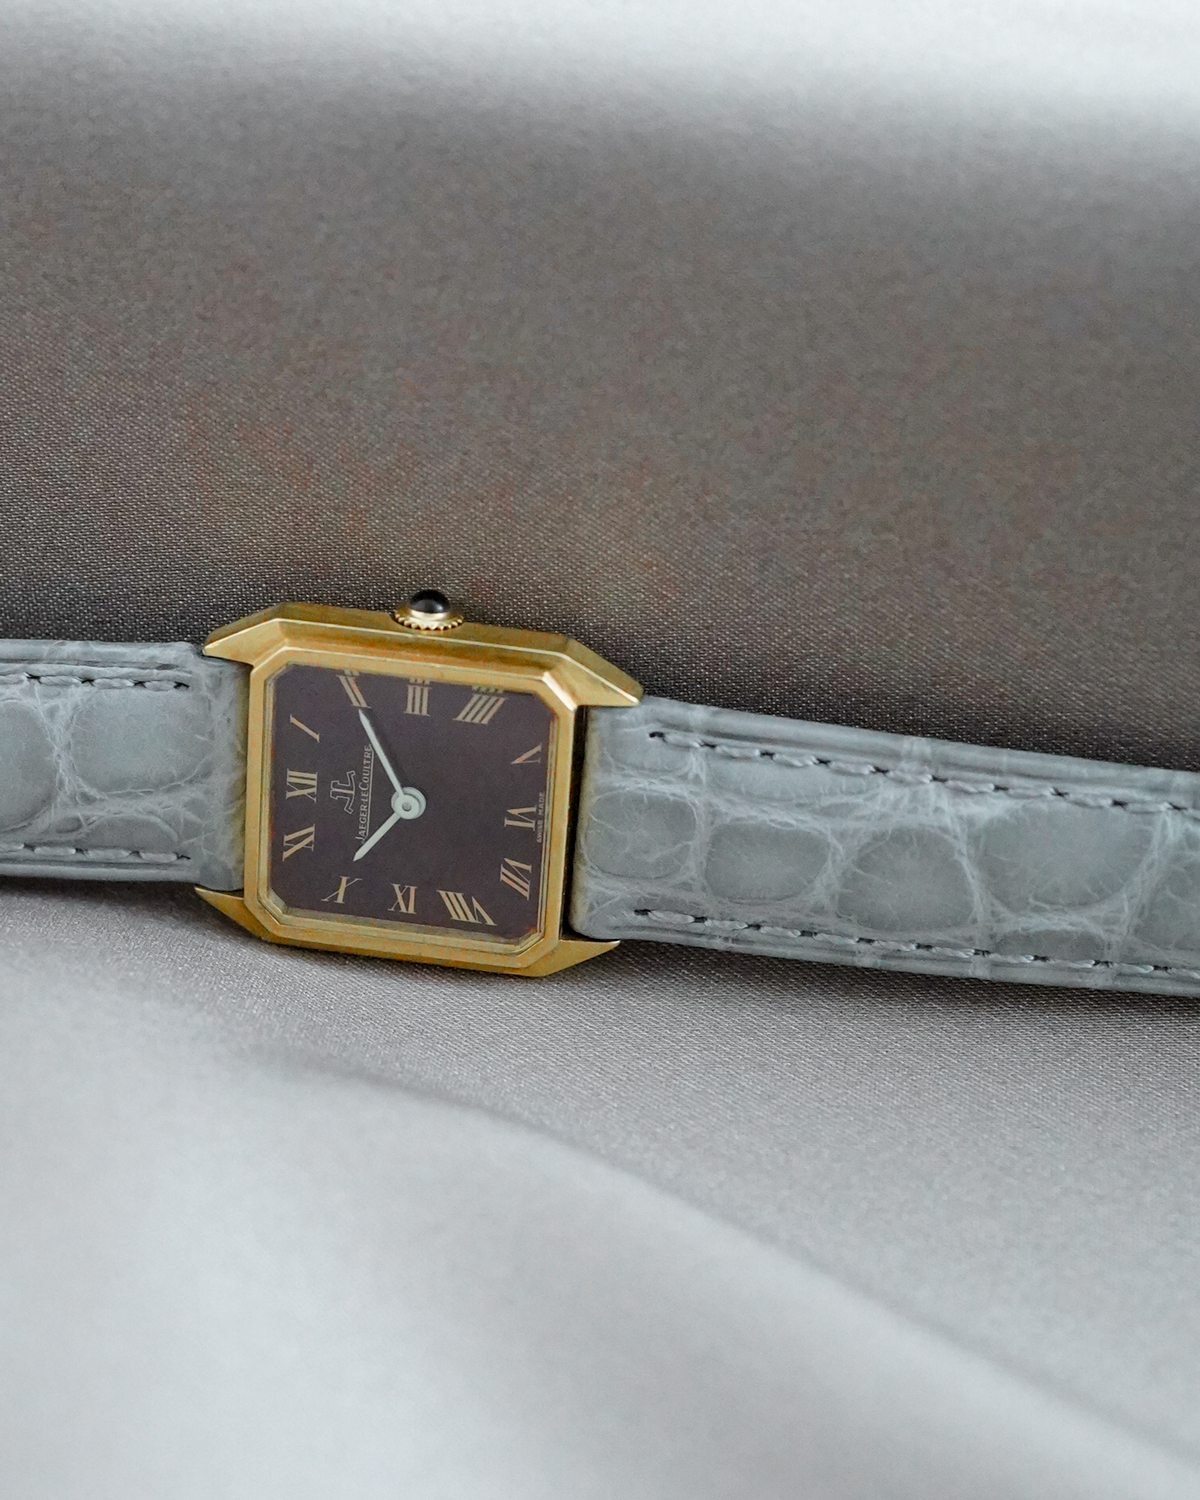 JAEGER-LECOULTRE｜Square｜18KYG - 70’s｜JAEGER-LECOULTRE (Vintage Watch)